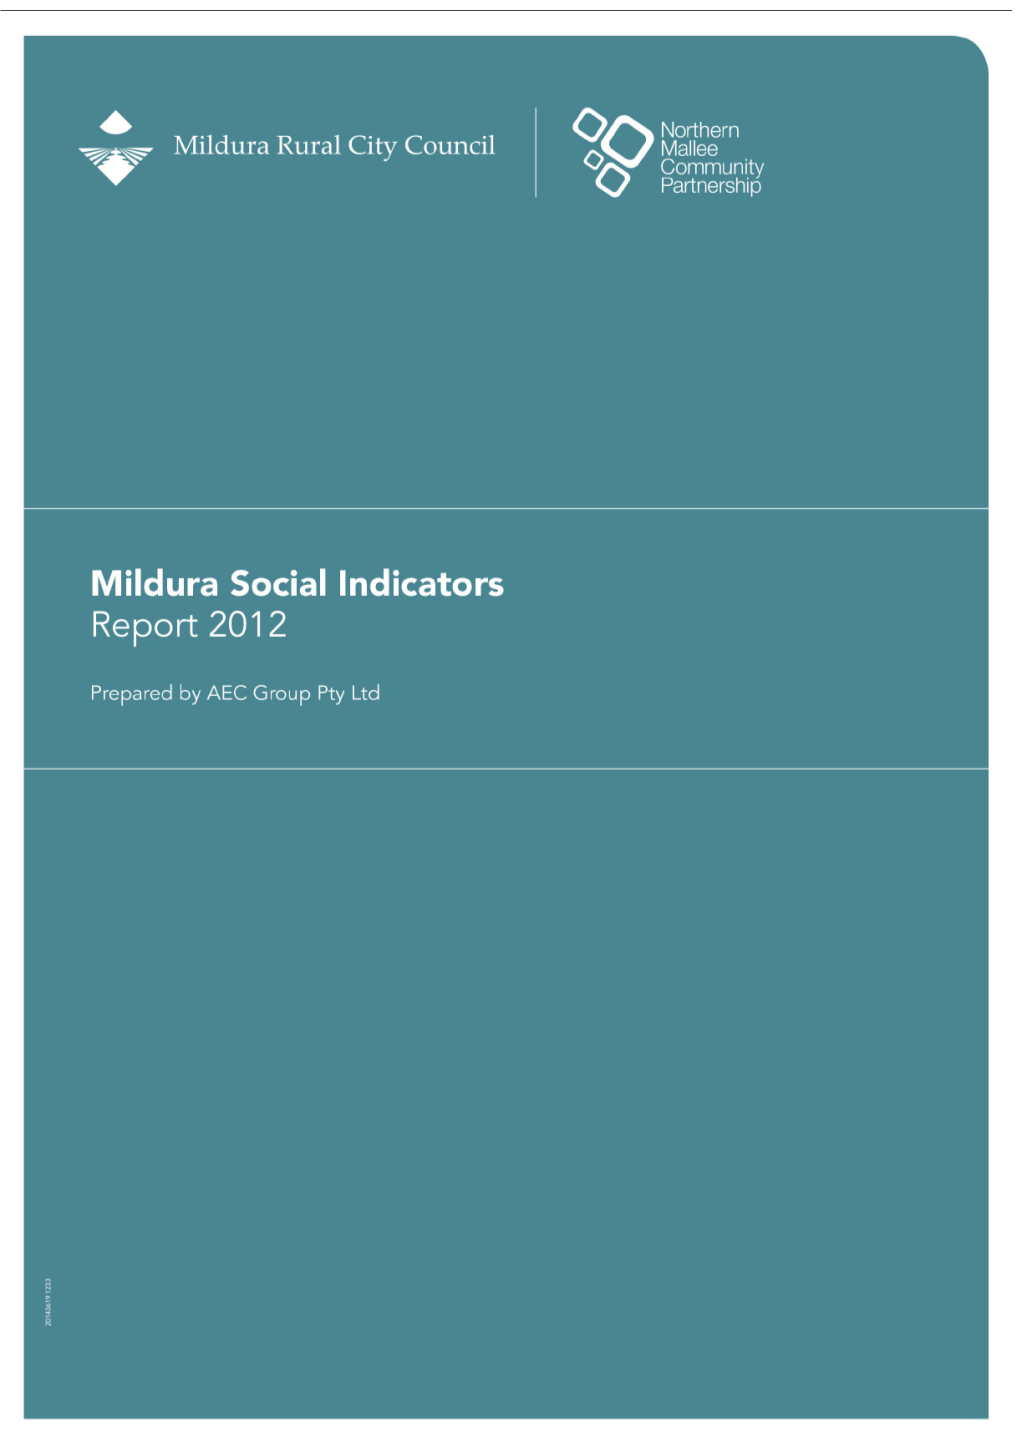 Mildura Social Indicators 2012